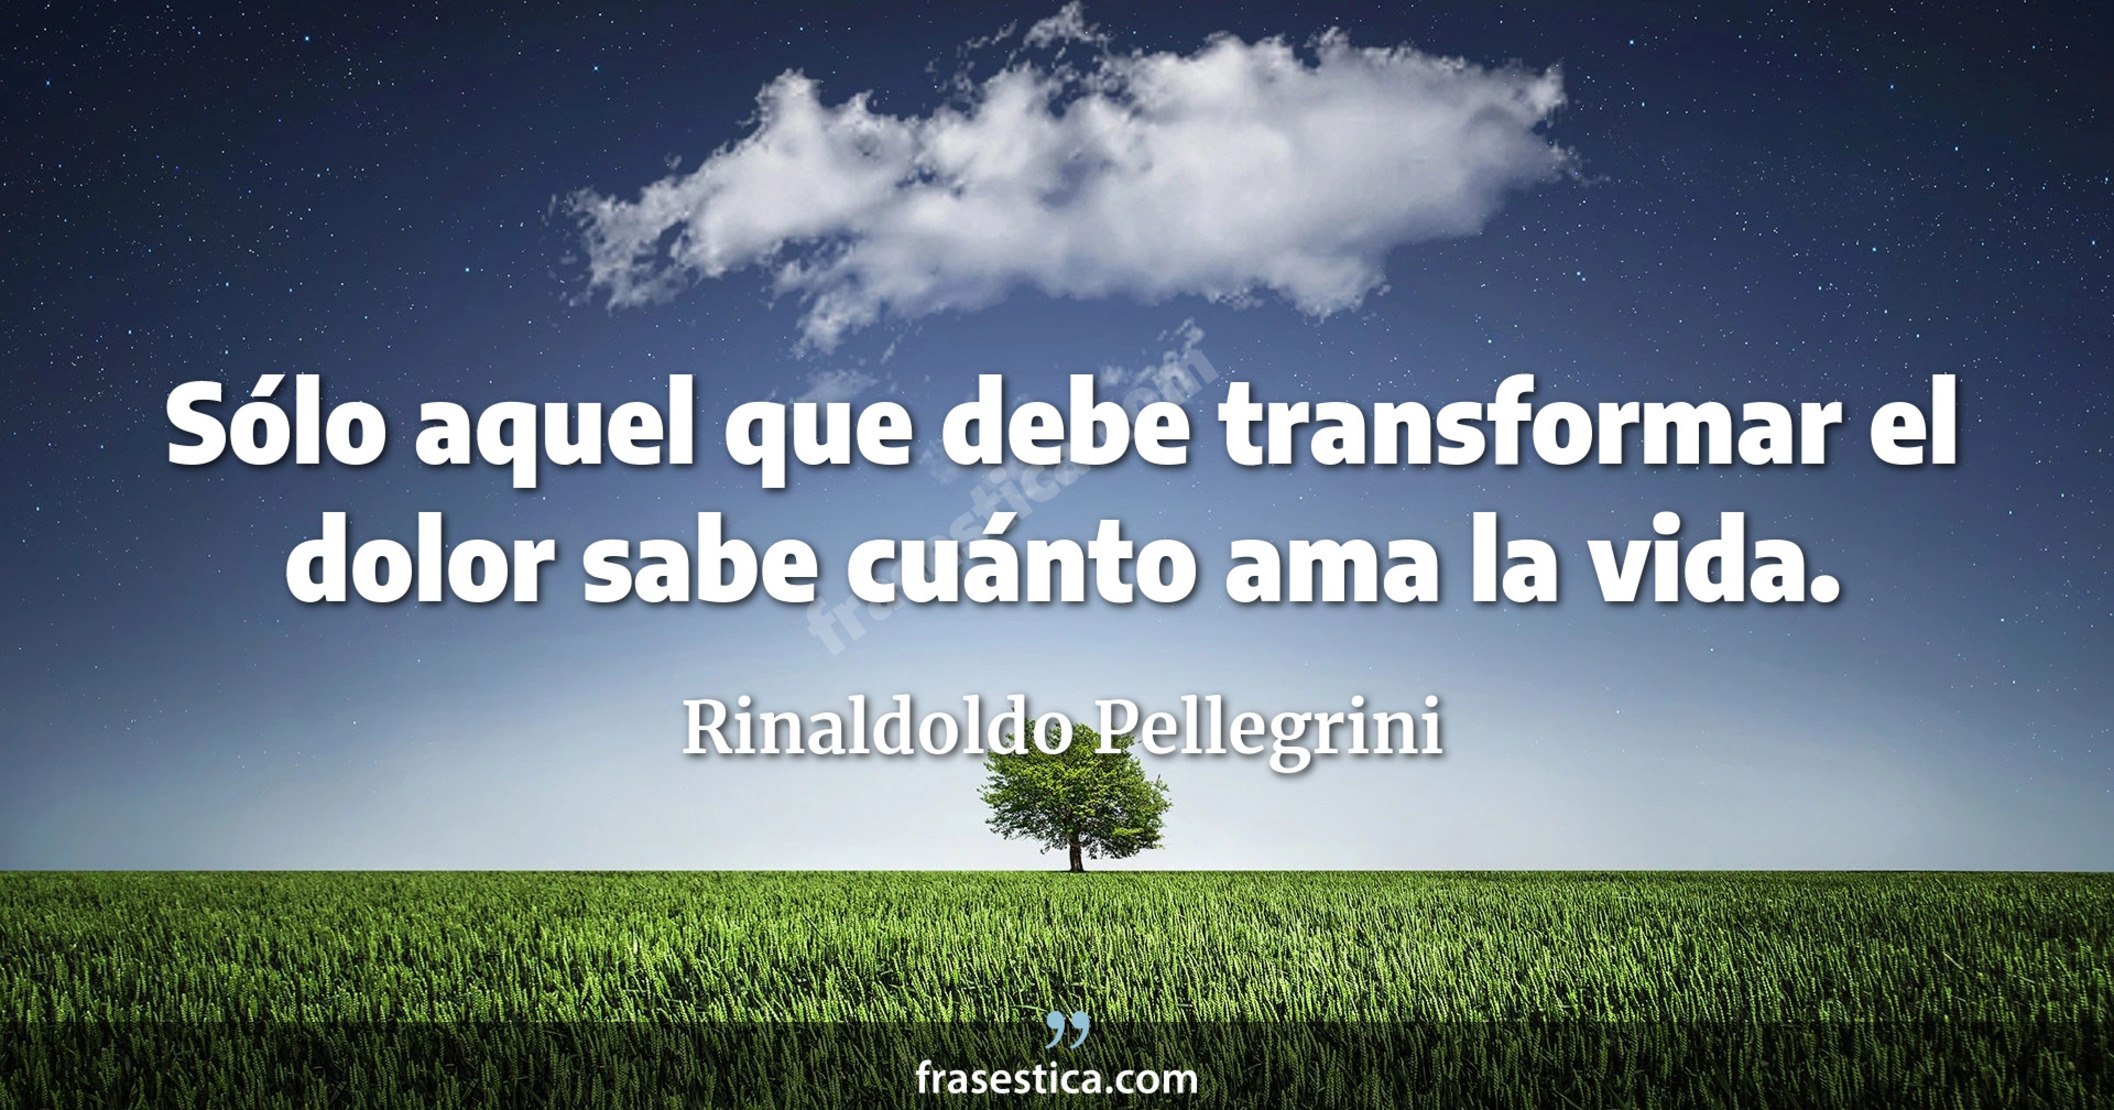 Sólo aquel que debe transformar el dolor sabe cuánto ama la vida. - Rinaldoldo Pellegrini